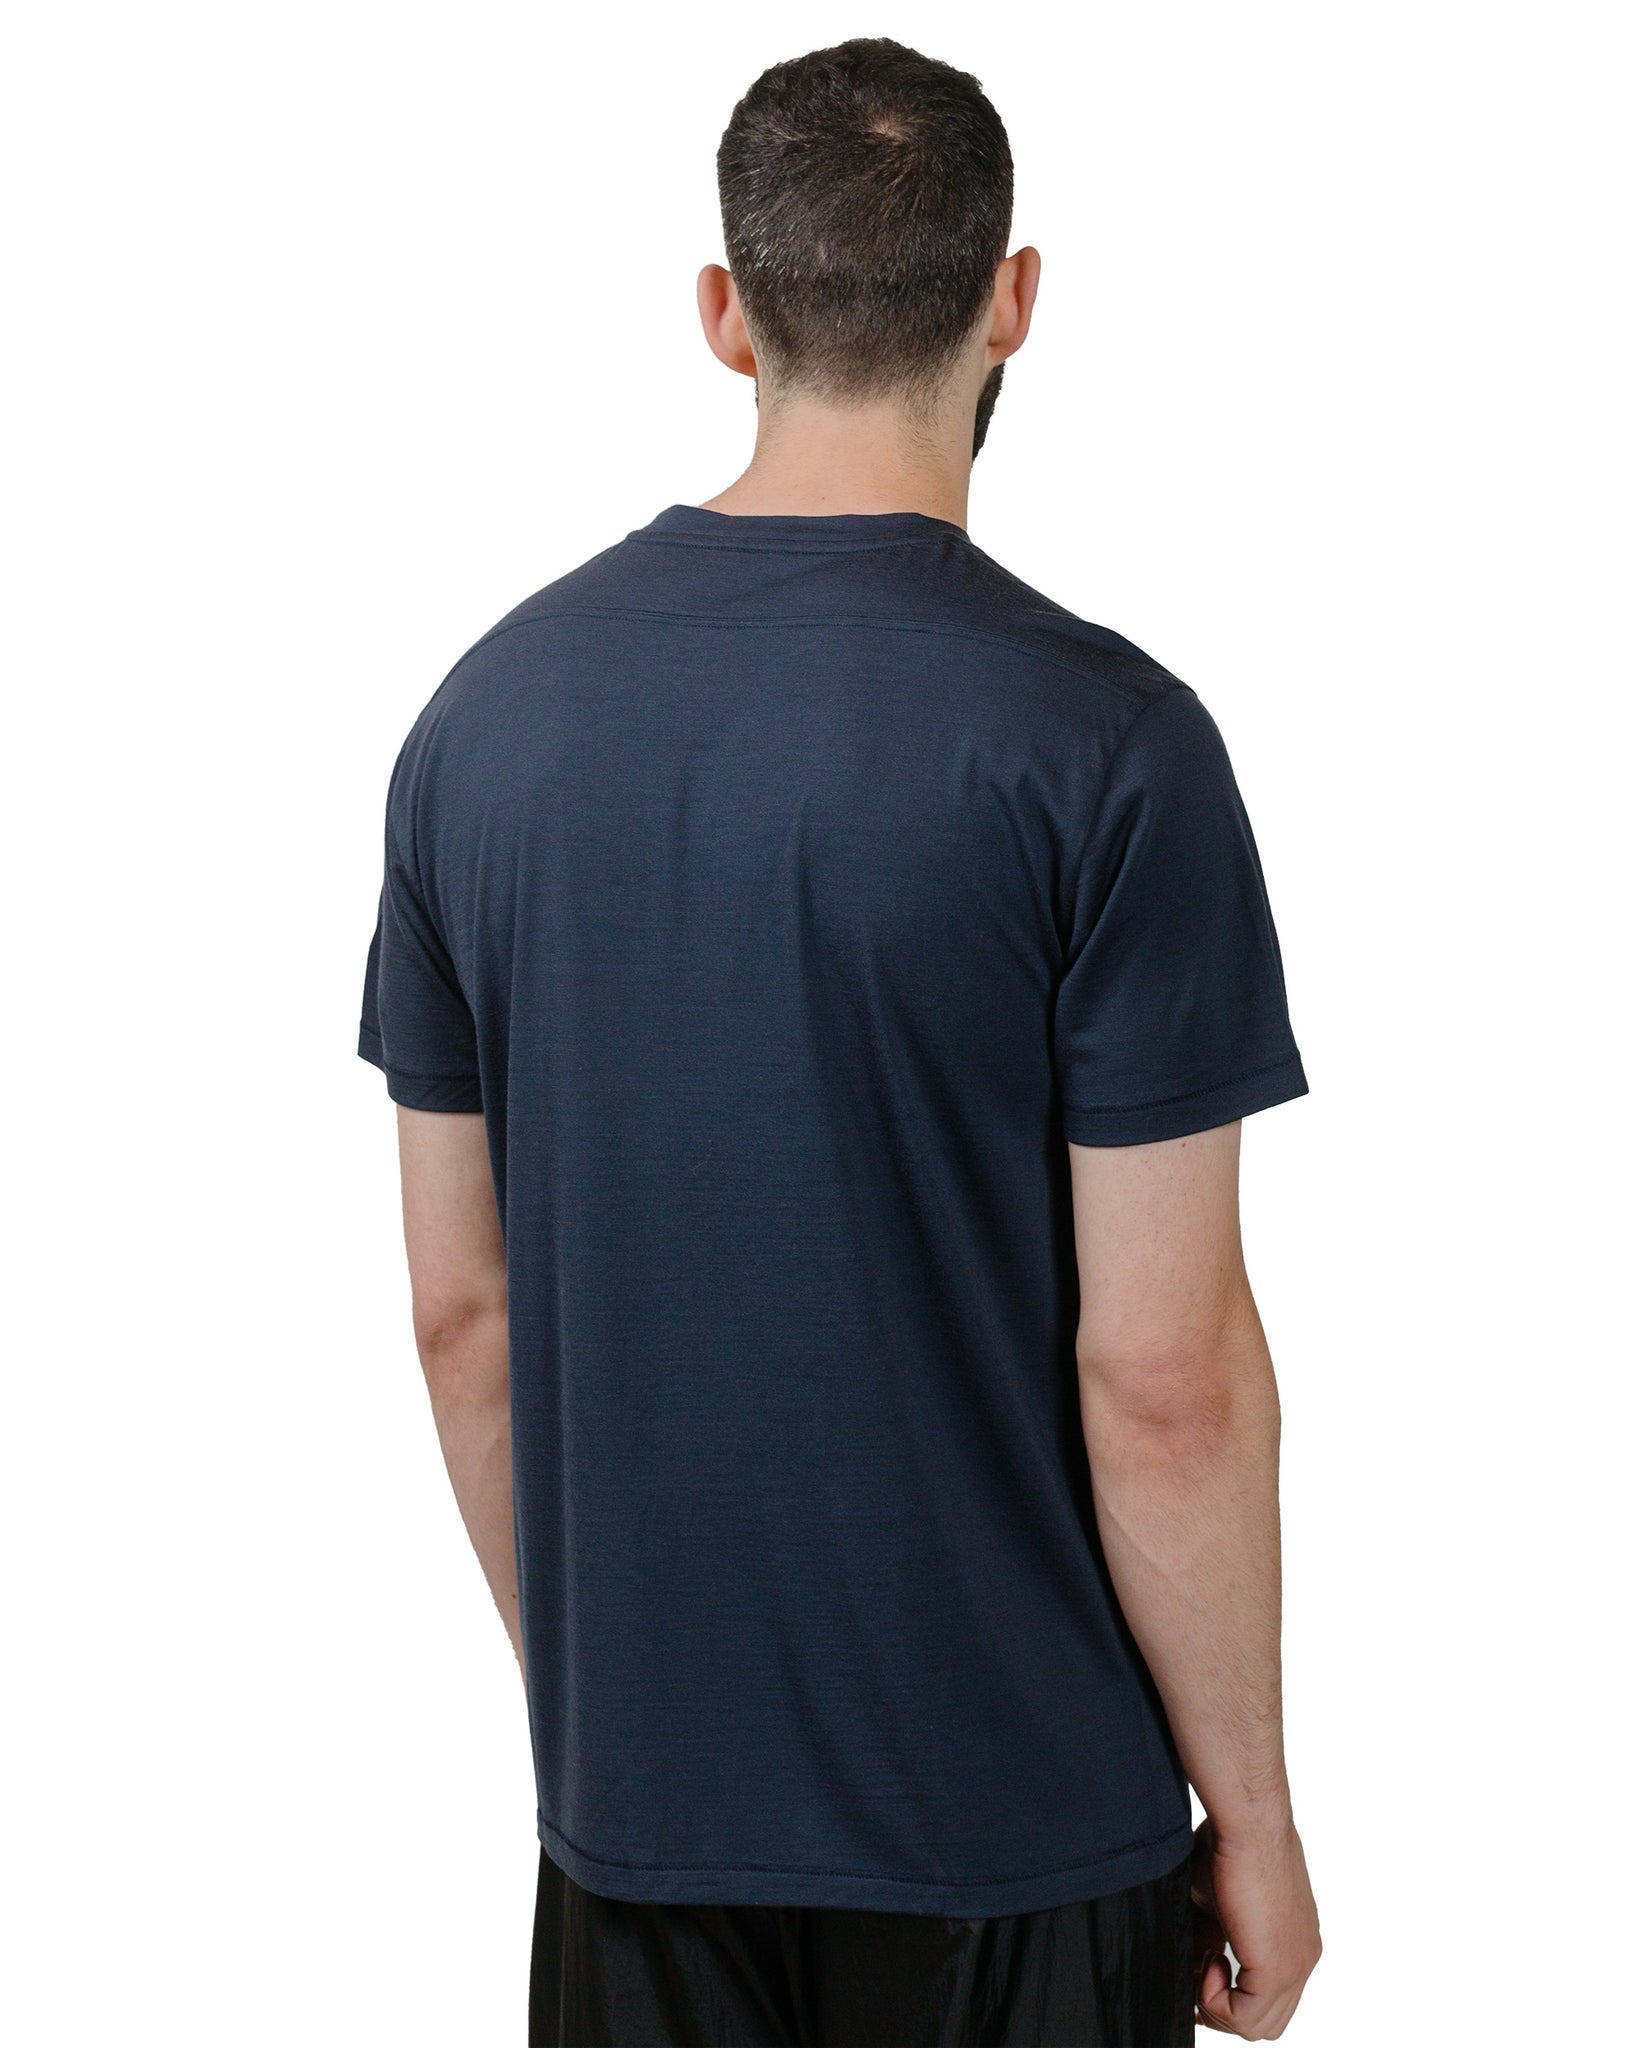 HNDSM A Better T-Shirt Midnight Blue model back